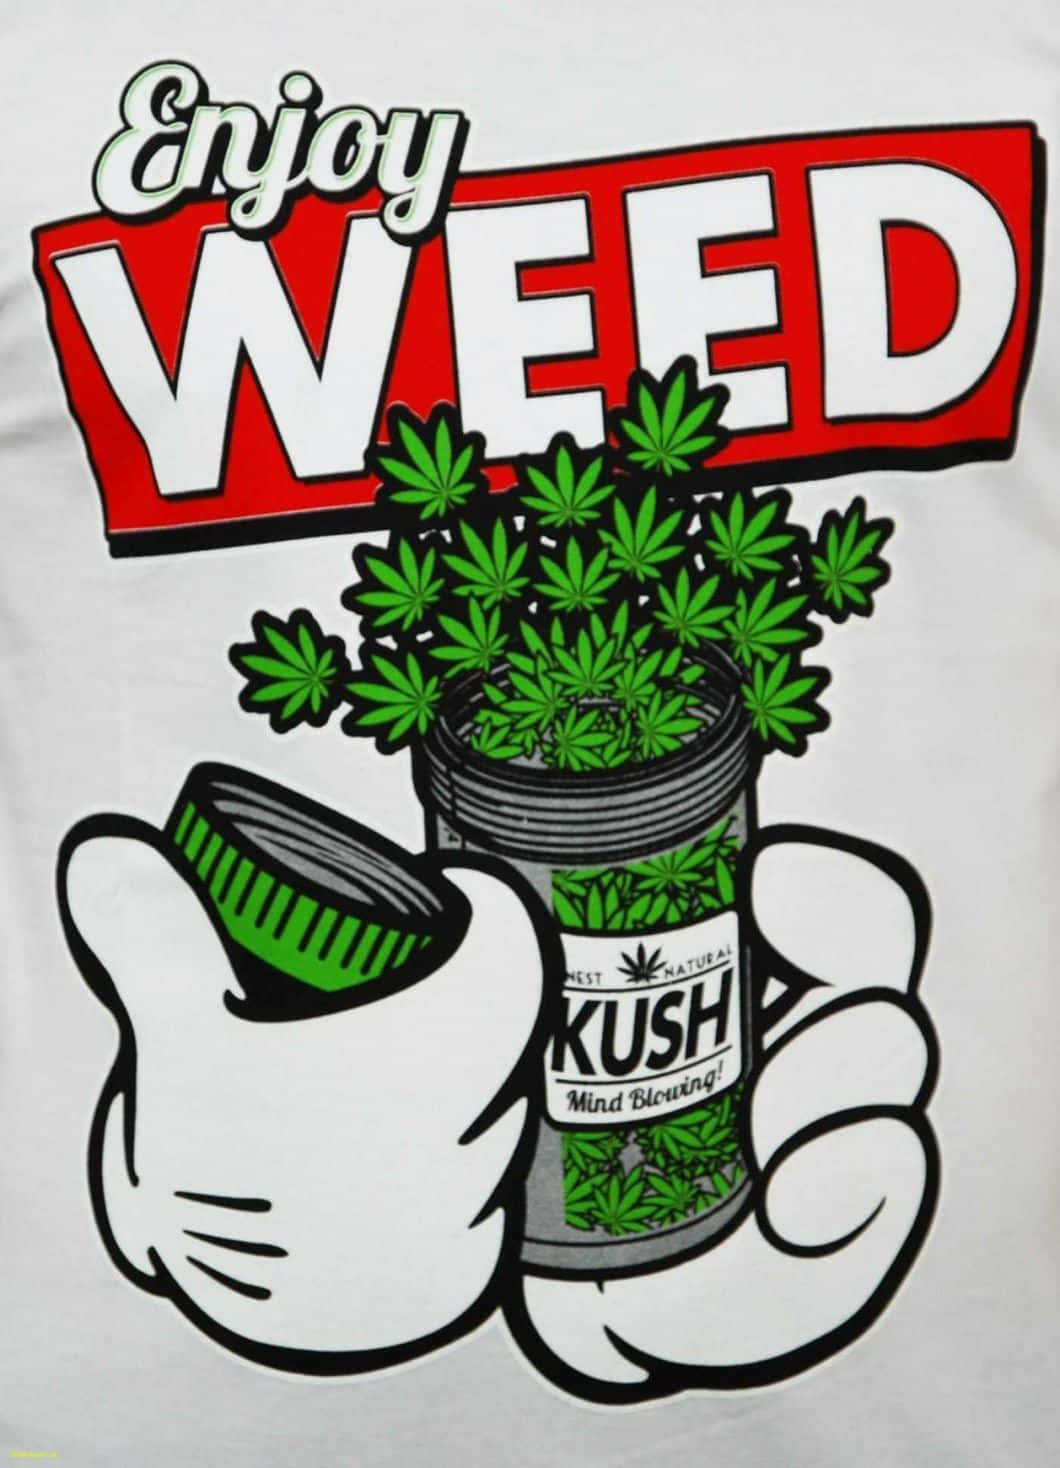 Vis din selvtillid, leve livet som om du altid er på toppen af dit spil, med Shit Dope Weed. Wallpaper